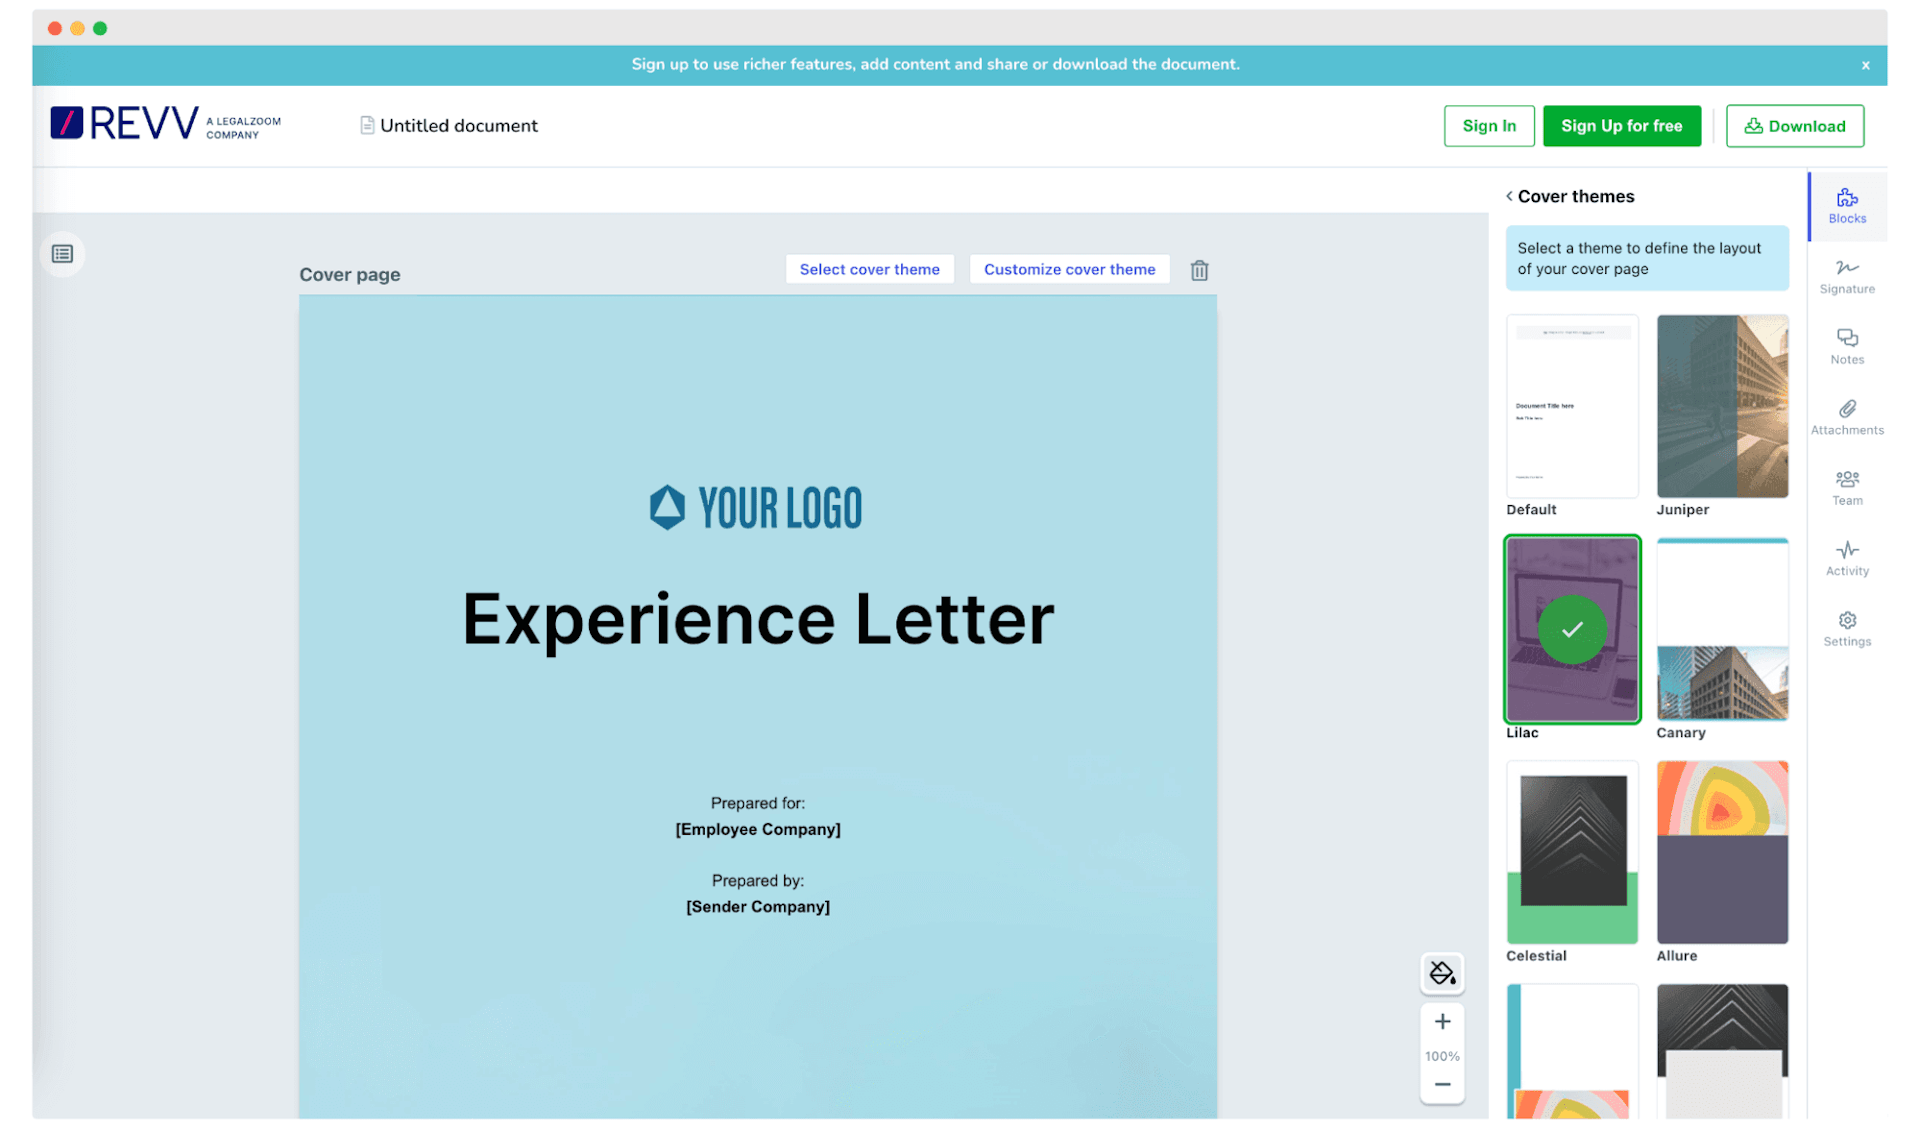 Revv experience letter maker dashboard.